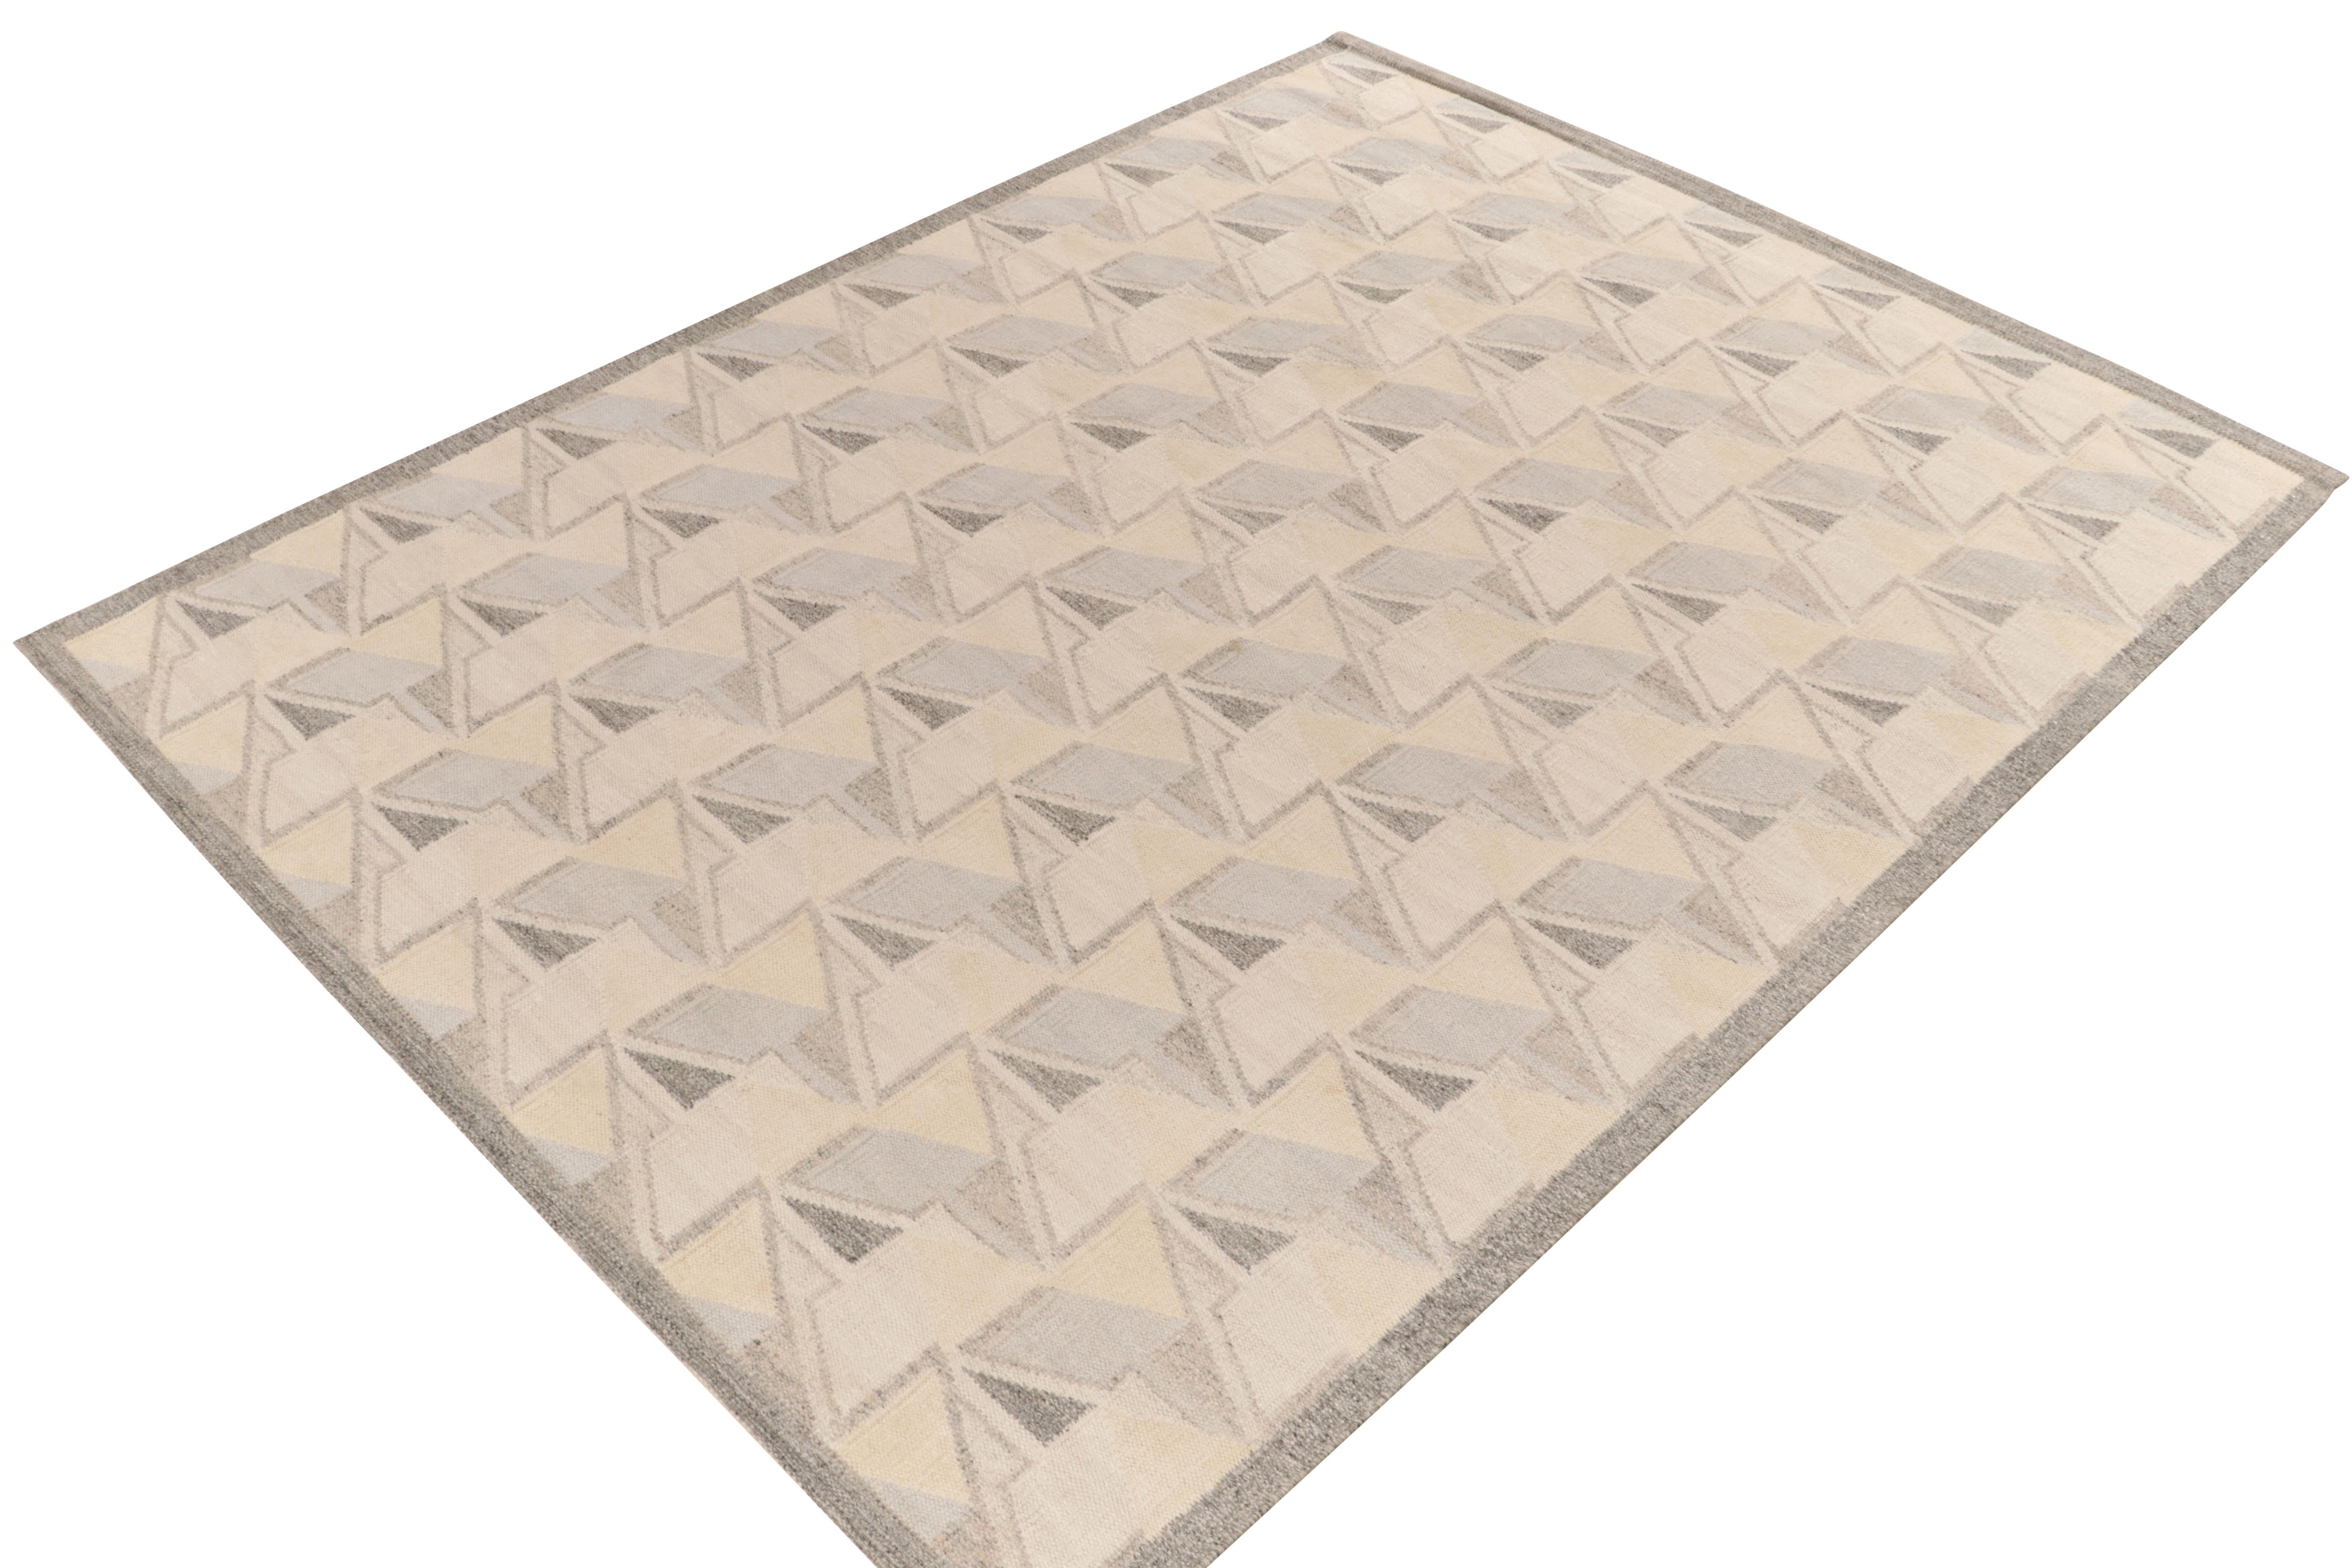 Le kilim de style scandinave de Rug & Kilim est issu de notre célèbre collection de tissage plat. Ce tapis 10x14 bénéficie de la finesse de l'esthétique suédoise avec un motif géométrique dextre qui donne une impression de 3D. La gamme de couleurs